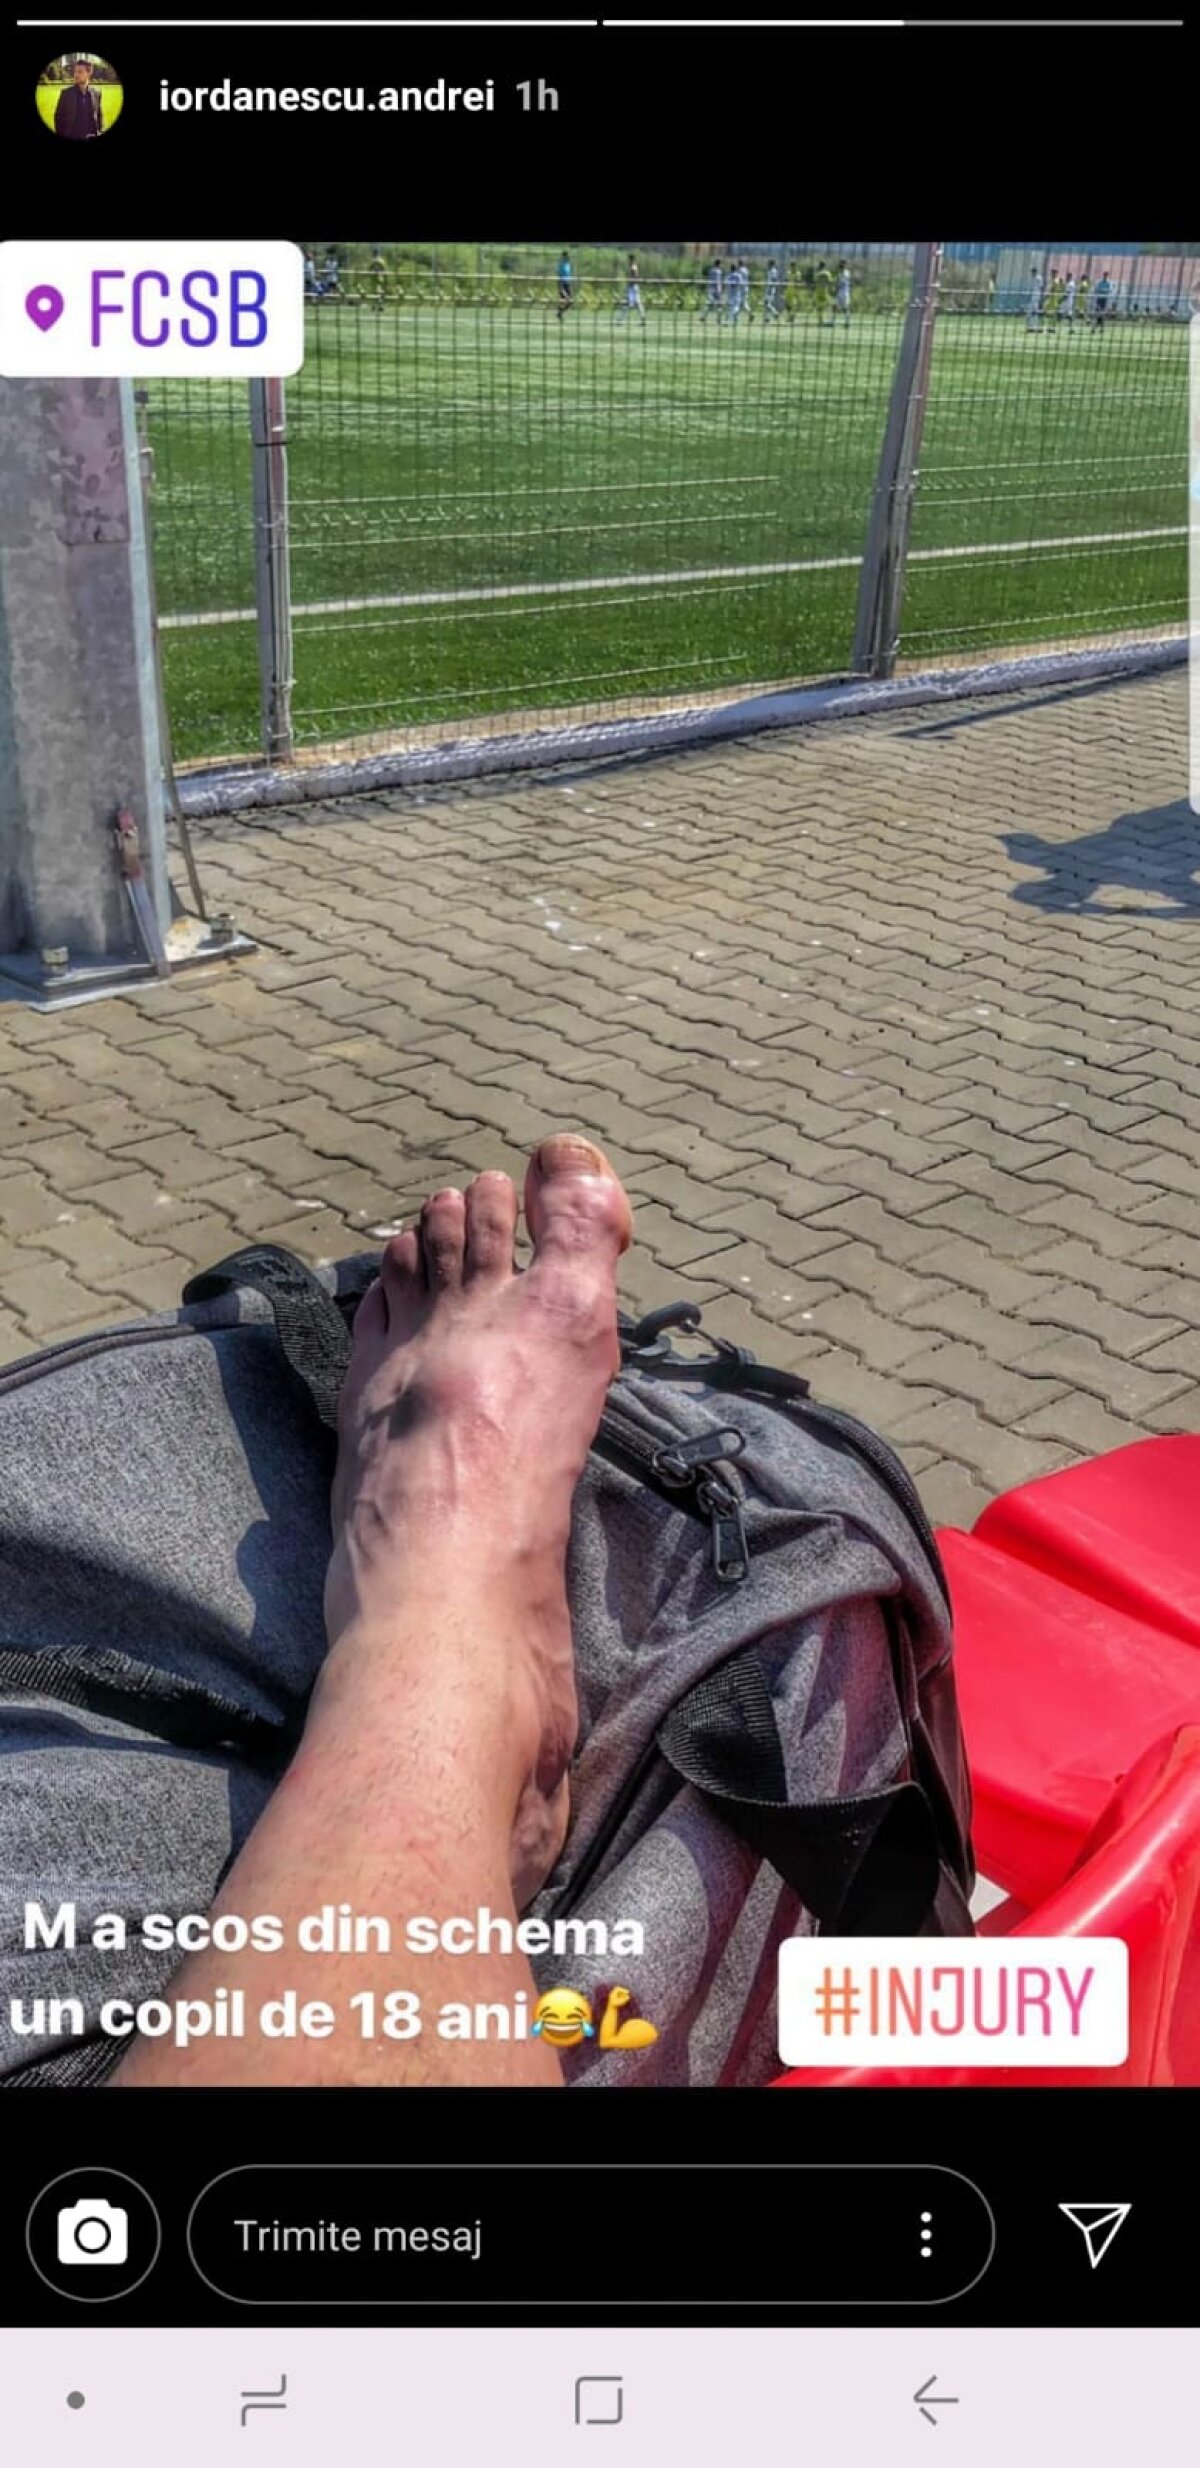 FOTO Imagine șocantă » Accidentare teribilă suferită de Andrei Iordănescu în meciul cu FCSB